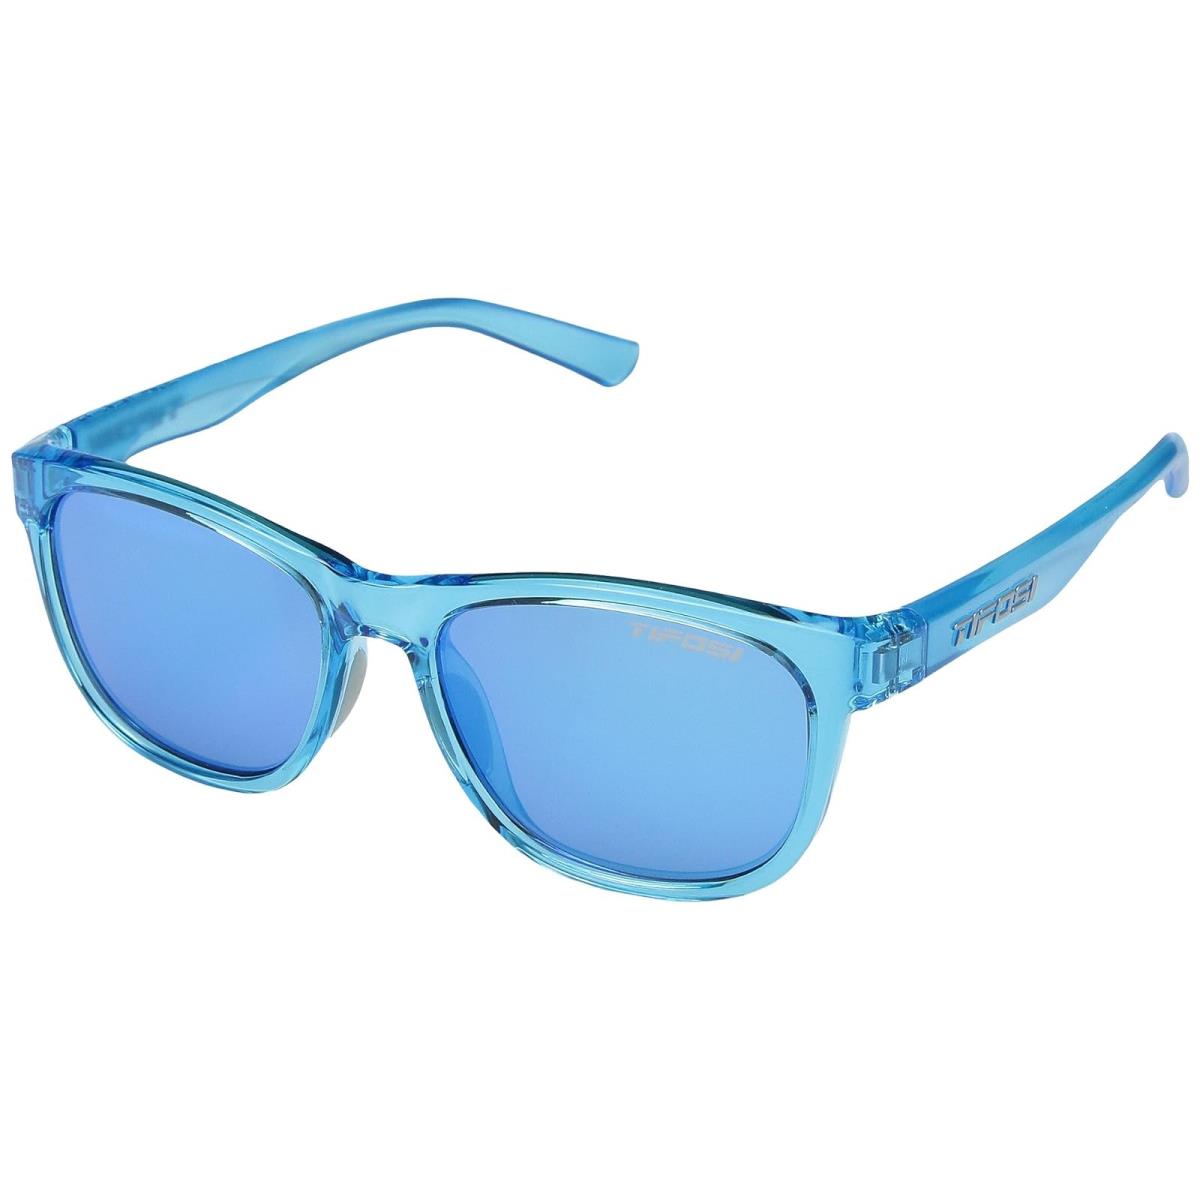 Unisex Sunglasses Tifosi Optics Swank Crystal Sky Blue